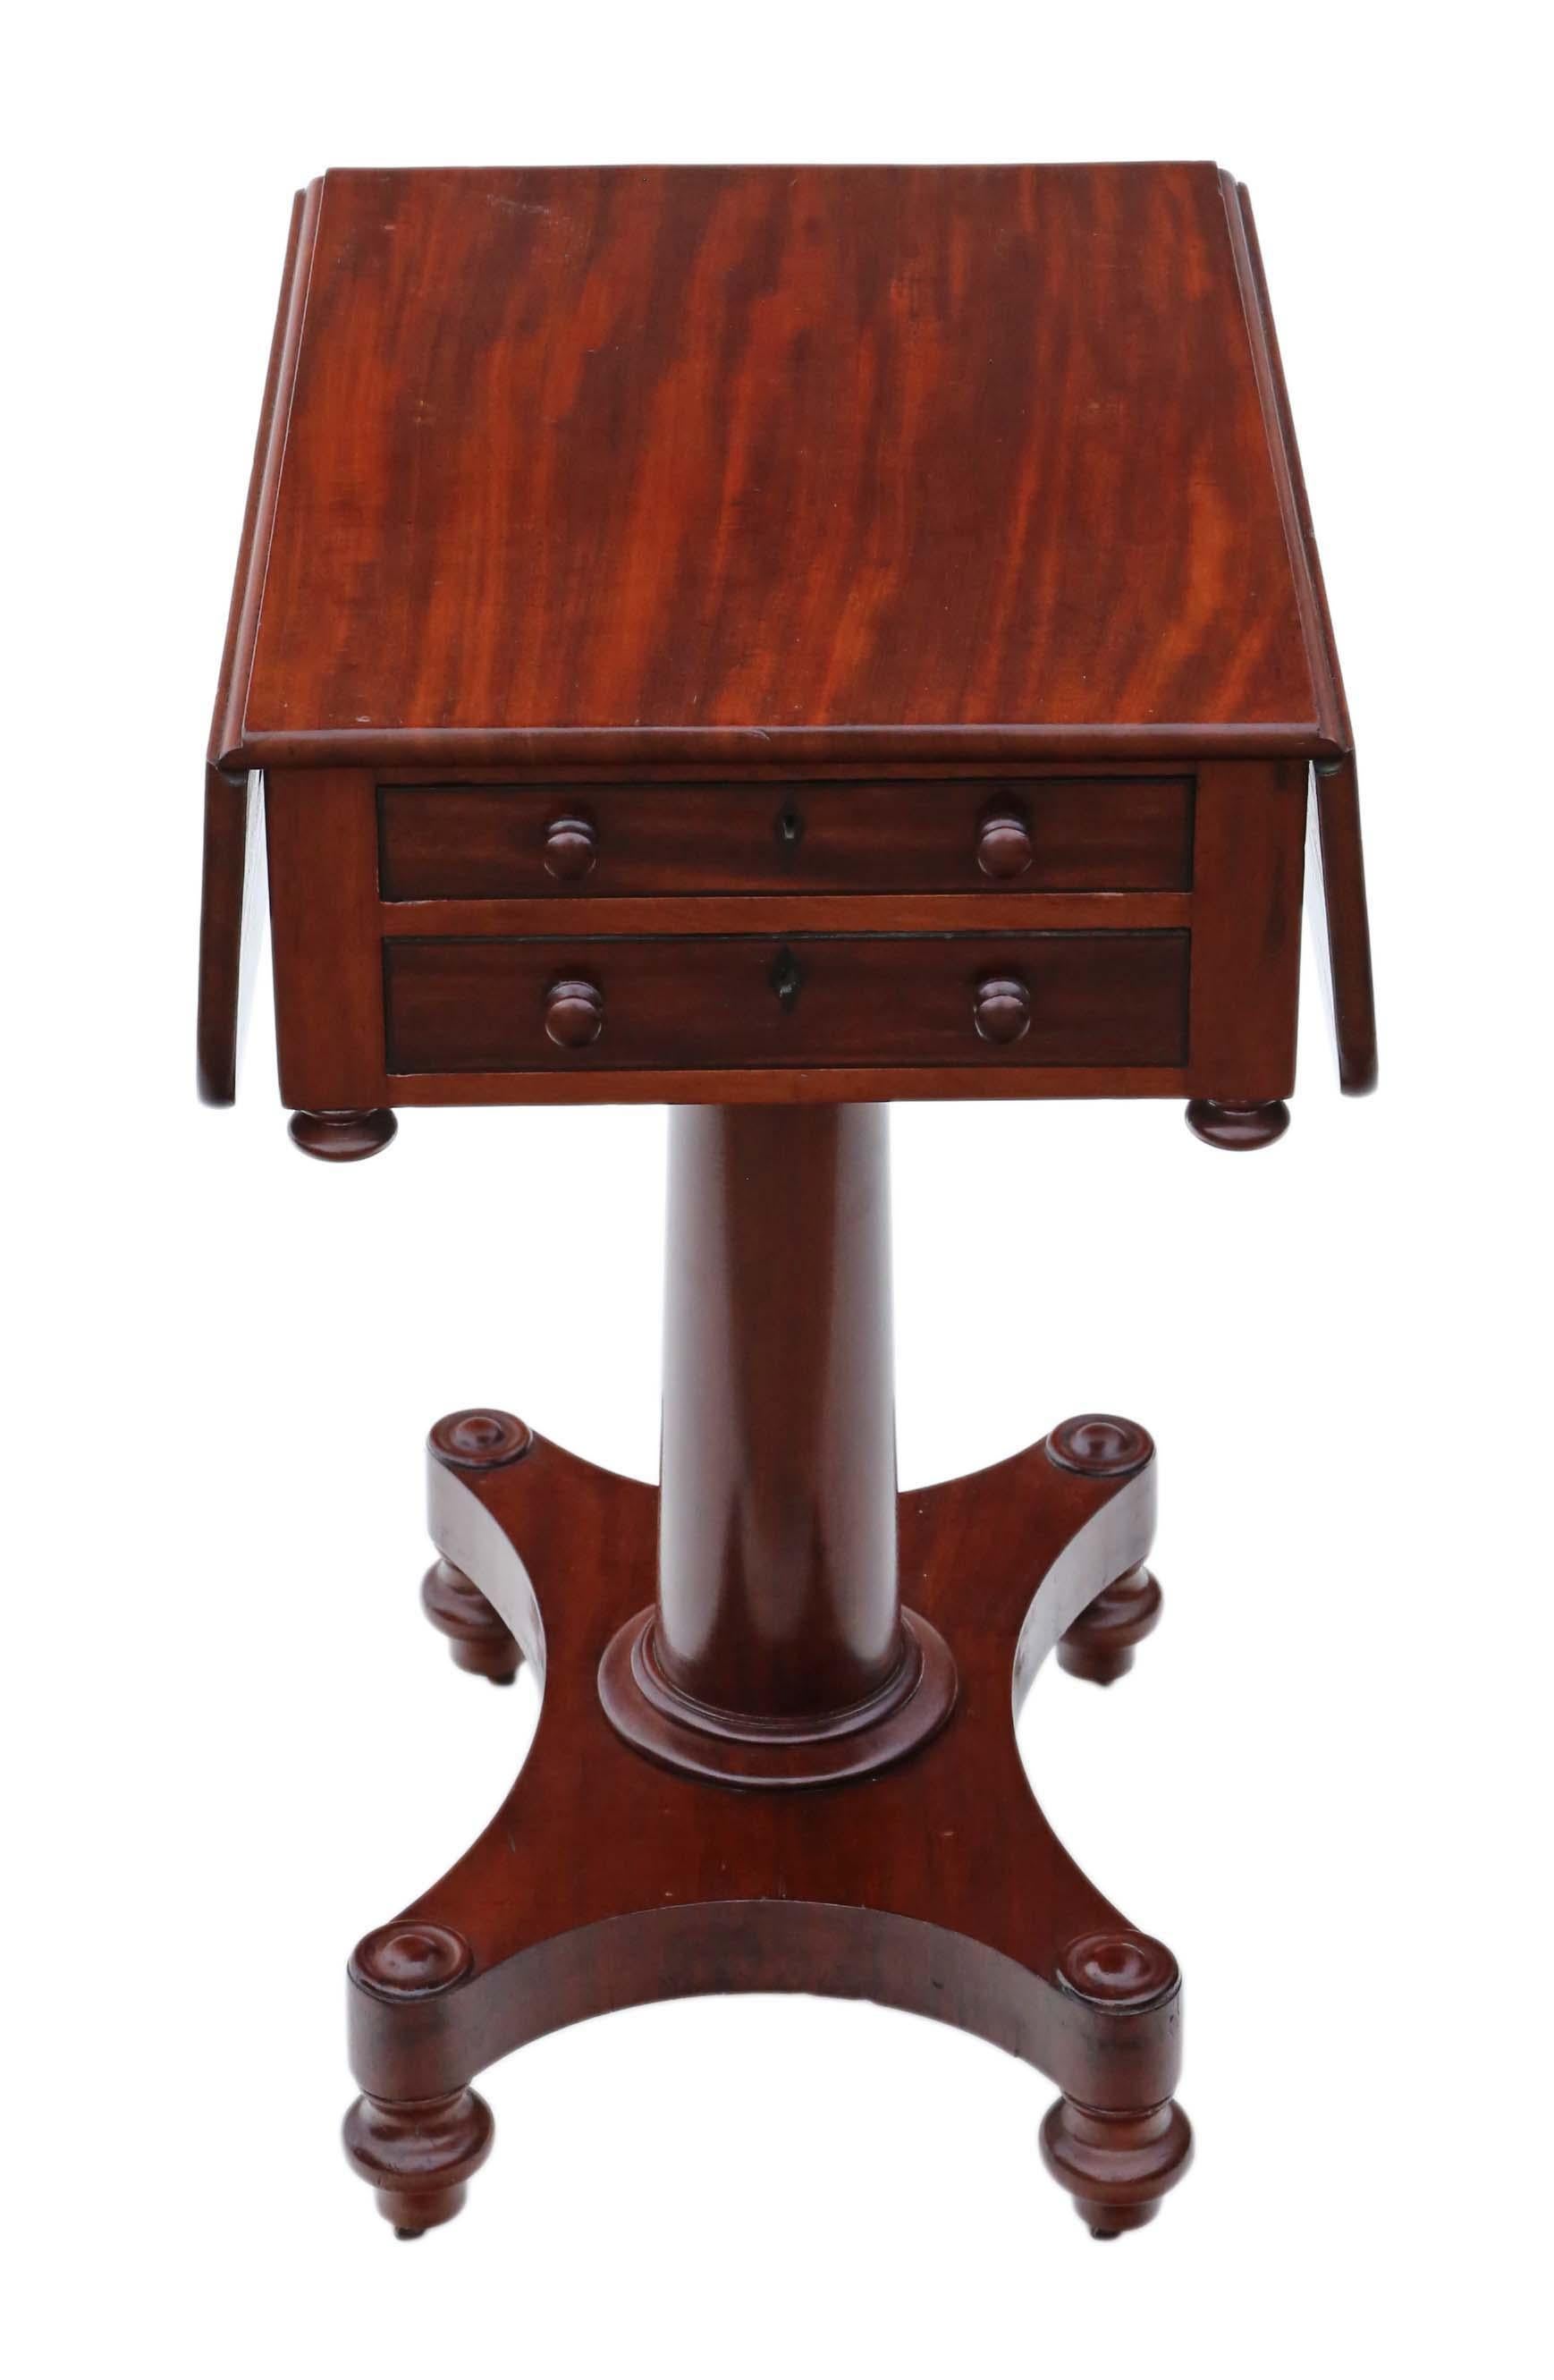 mahagoni-Arbeitstisch mit zwei Schubladen und Klappe, 19. Jahrhundert, ca. 1820-1840 (Regency/William IV). Zwei mahagonigefütterte Schubladen auf der einen Seite, die sich frei verschieben lassen (Schnuller auf der anderen).
Solide und stark, ohne